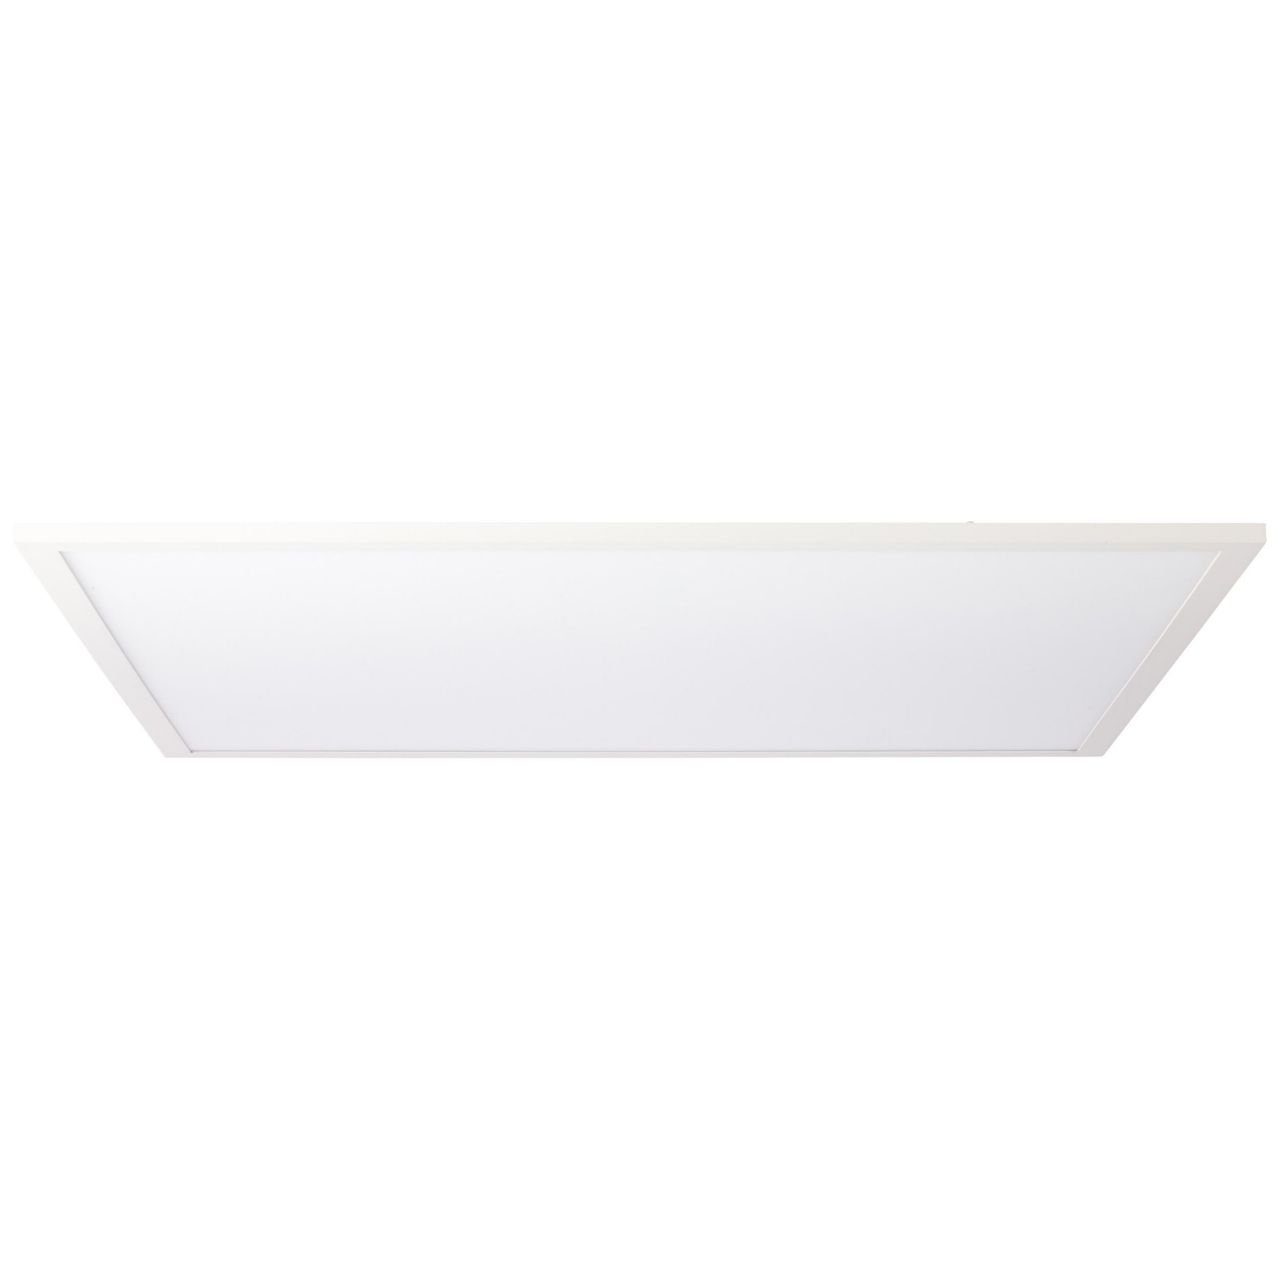 Lampe LED weiß/kaltweiß Brilliant Deckenaufbau-Paneel 40W 60x60cm Deckenleuchte 1x Buffi 4000K, LED Buffi,